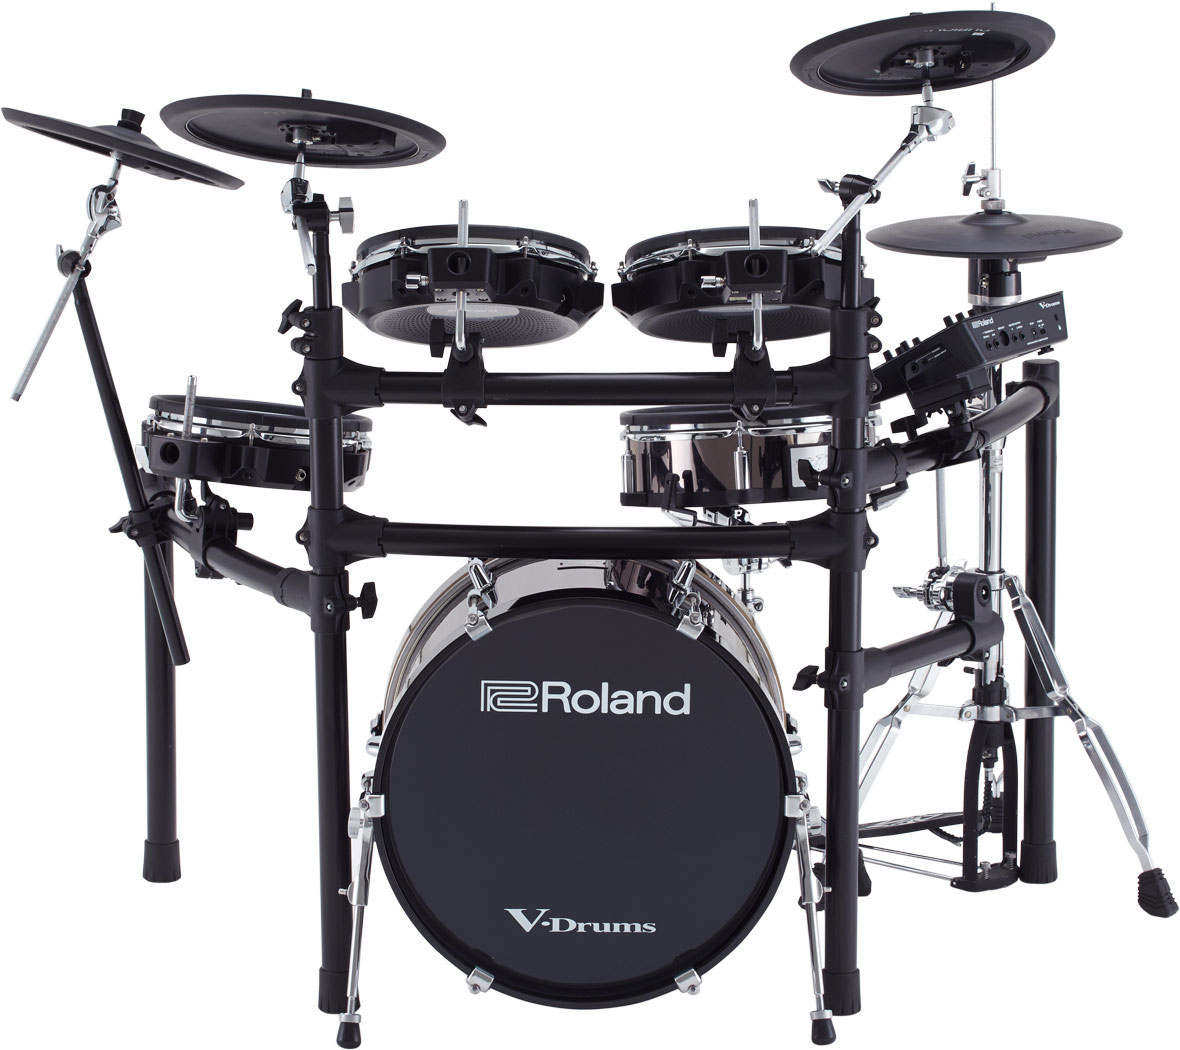 Buy the Roland TD-25KVX V-Drums Electronic Drum Kit (Ex-Demo) #Z9I0198